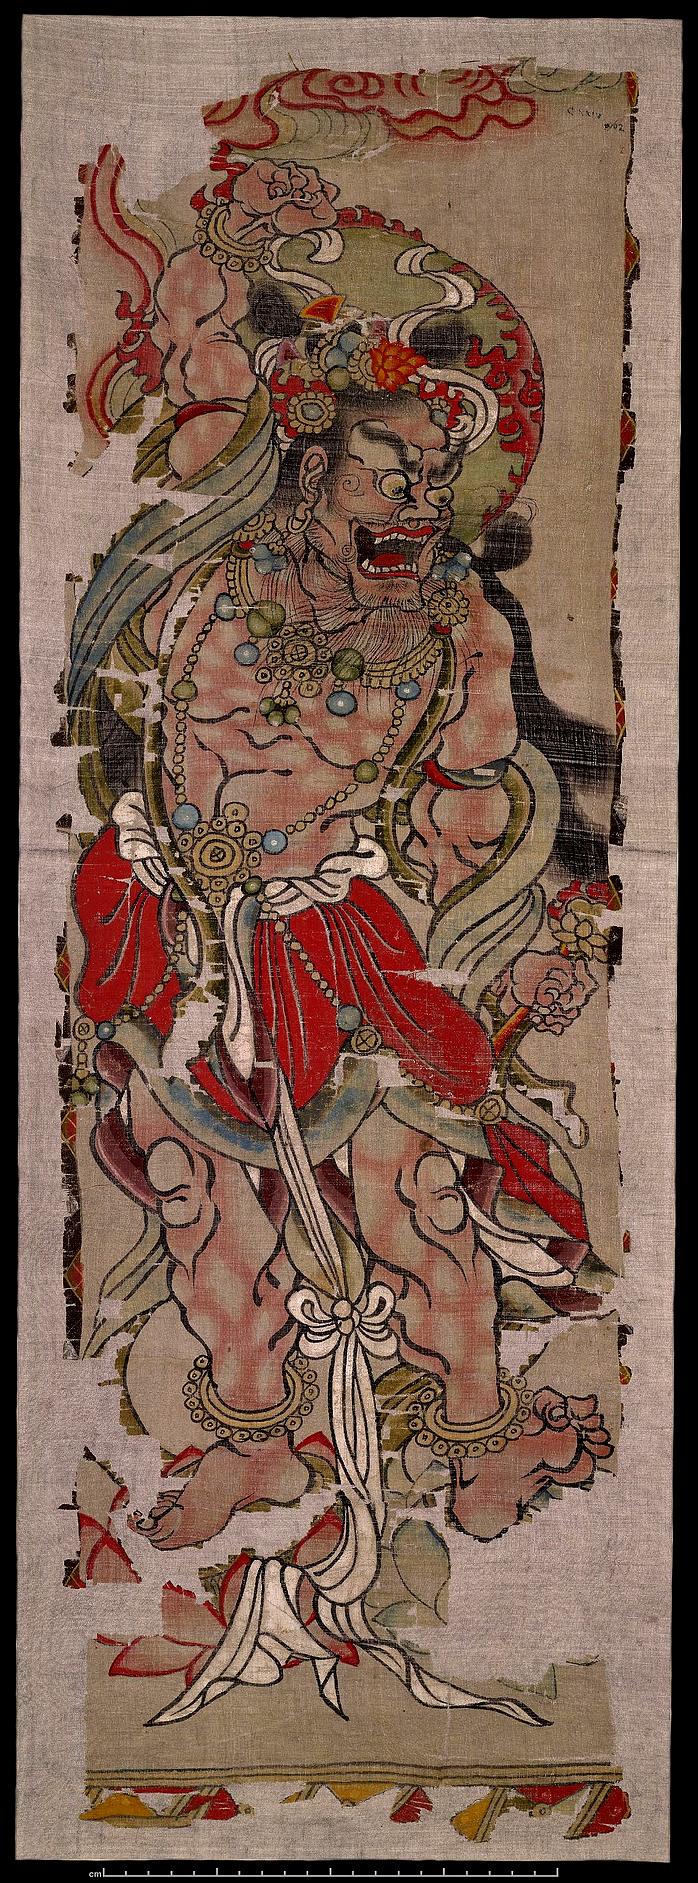 敦煌壁画金刚力士像幡彩绘绢本70011122x302796